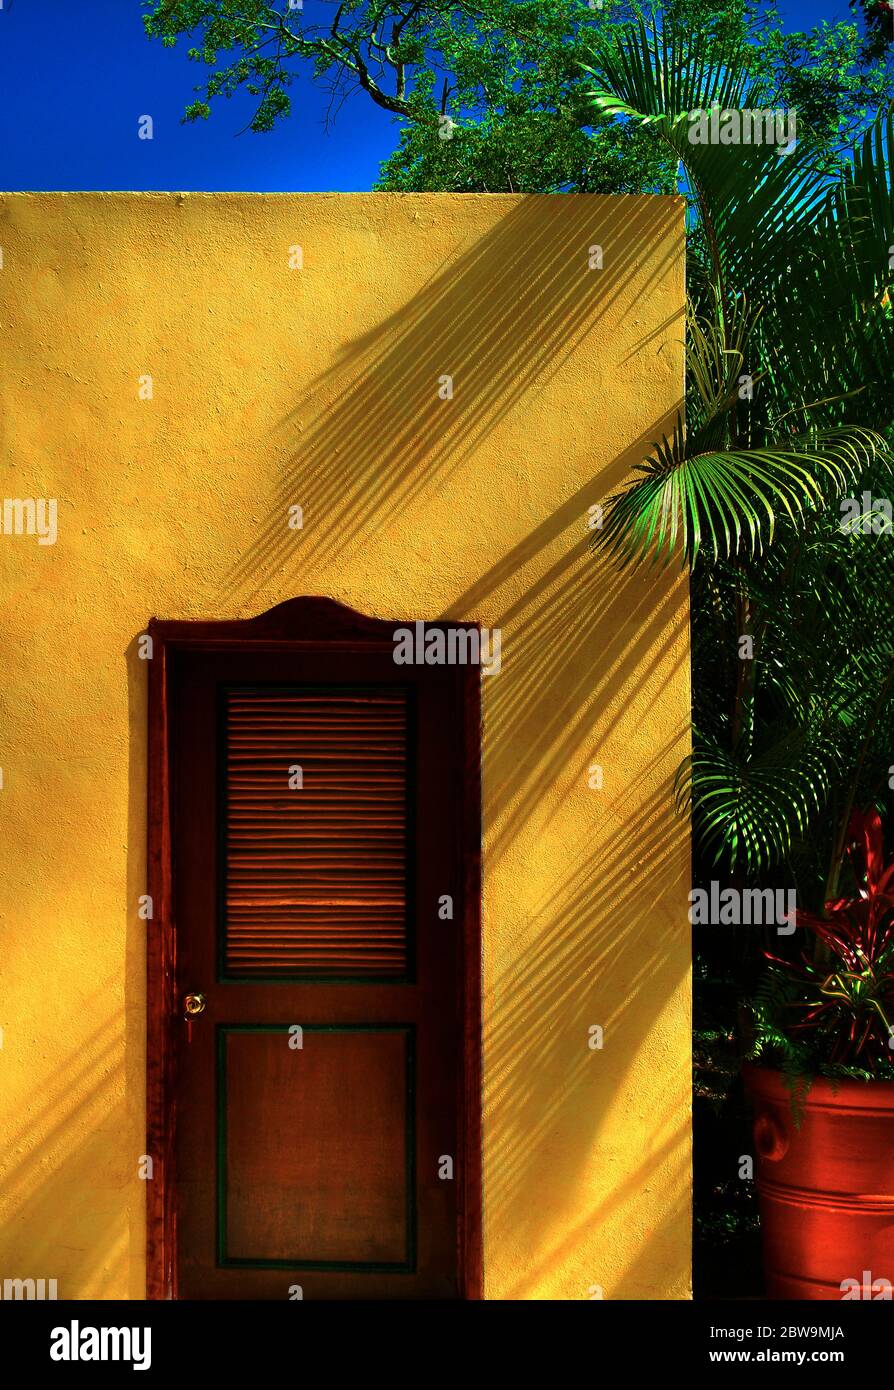 Morocco, Marrakesh, Wooden door in yellow building Stock Photo